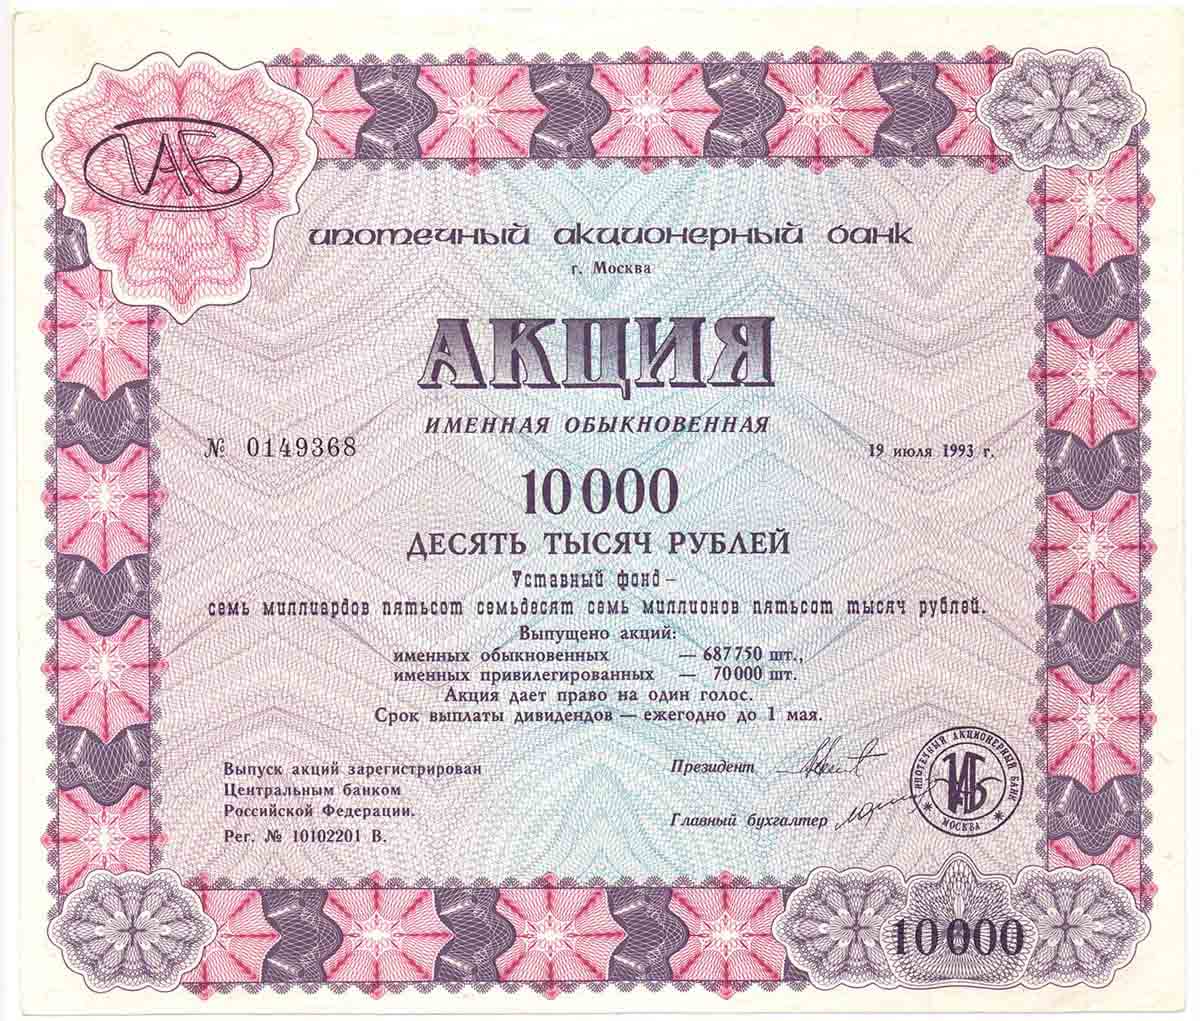 Ипотечный акционерный банк. Москва, 1993.